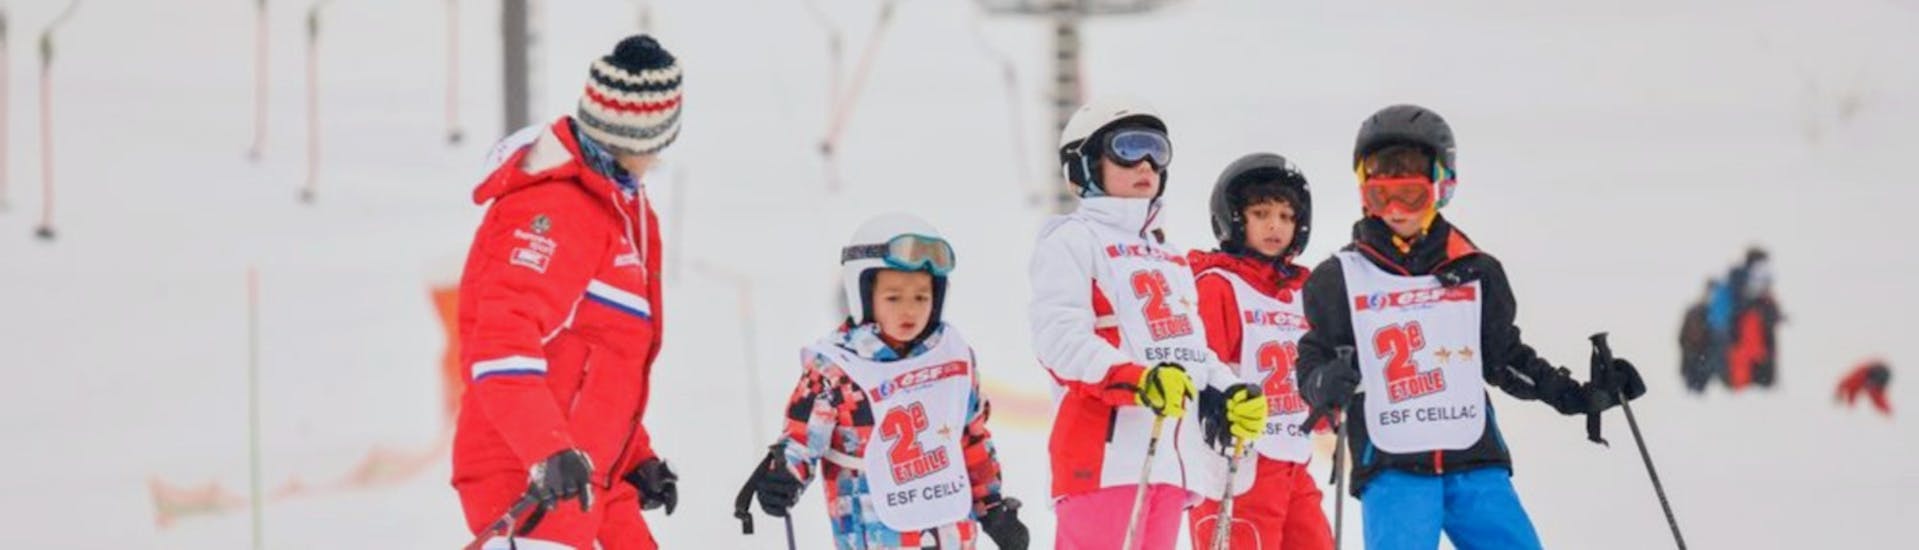 Un super moment sur les pistes pour les skieurs du cours de ski enfants de l'ESF Ceillac.